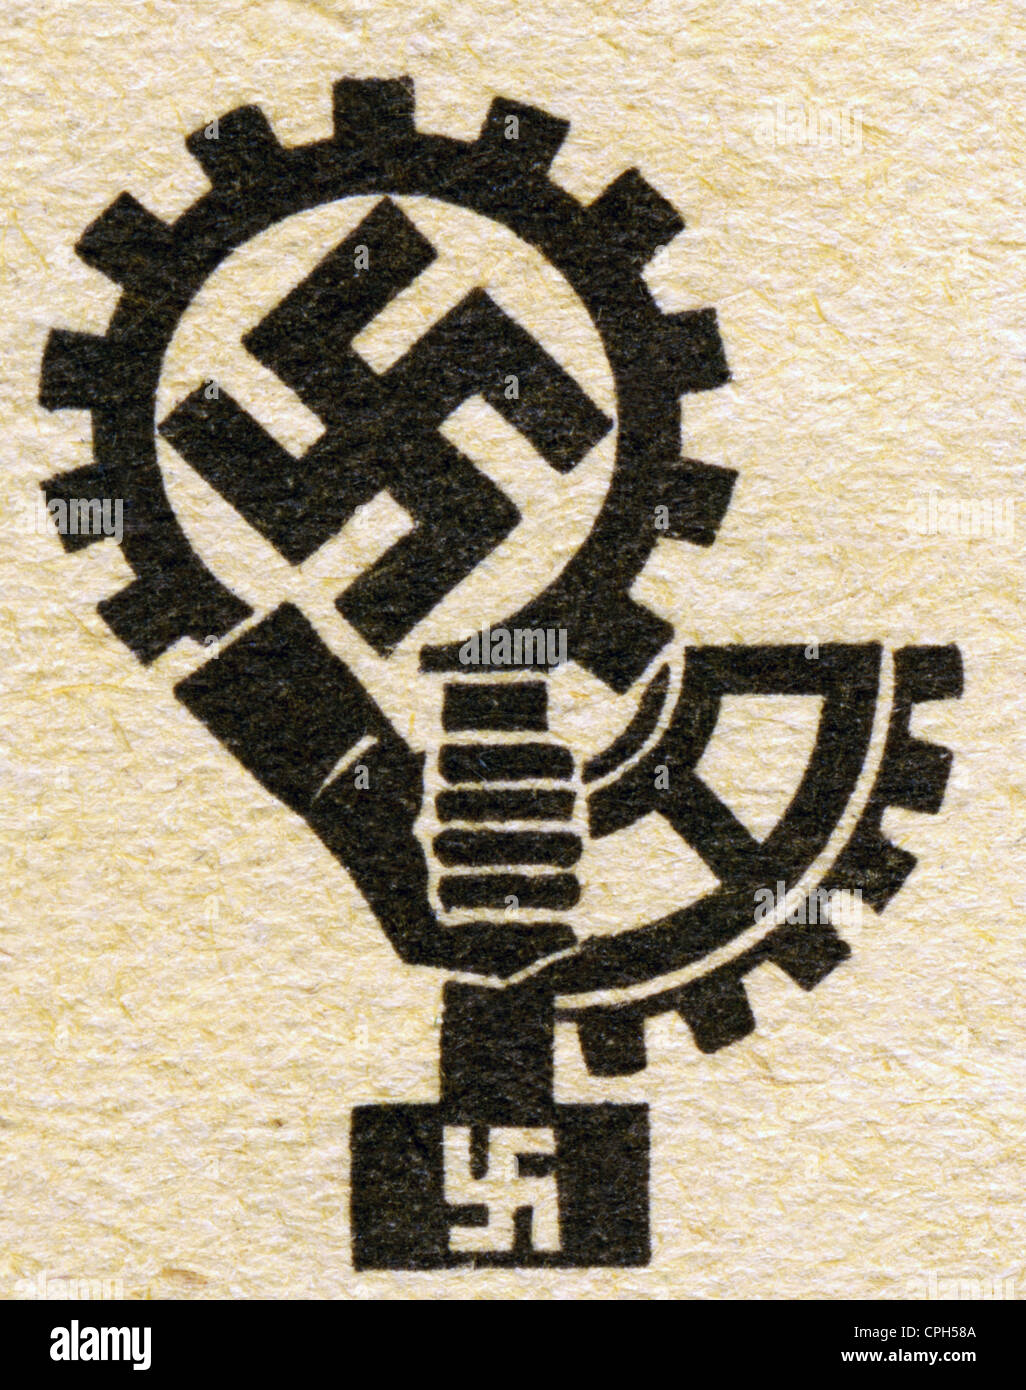 Nacionalsocialismo / nazismo, 1933 - 1945, Derechos adicionales-Clearencias-no disponible Foto de stock